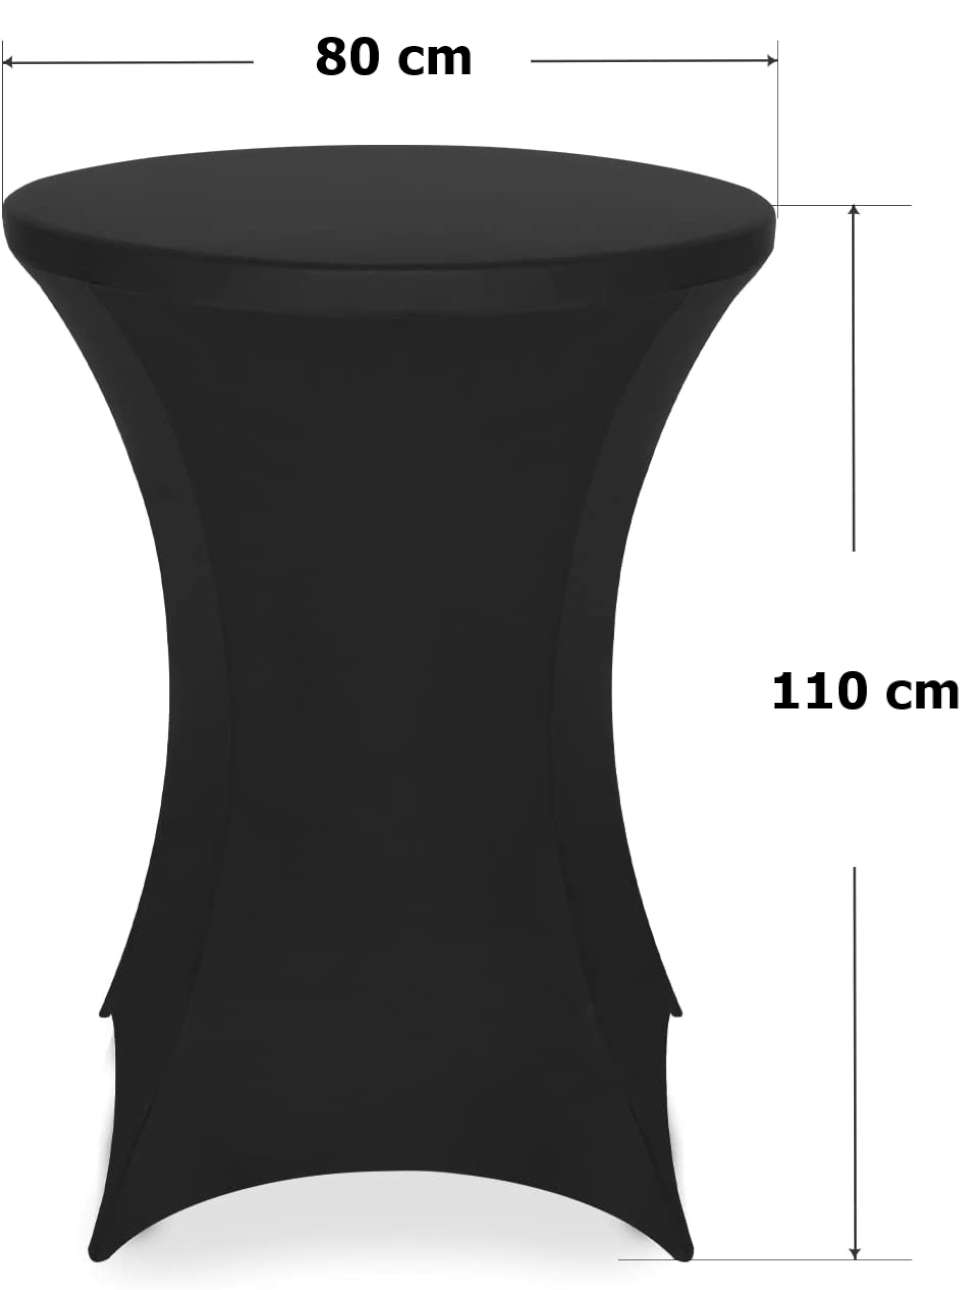 Pokrowiec stolika koktajlowego 80 cm czarny wymiary